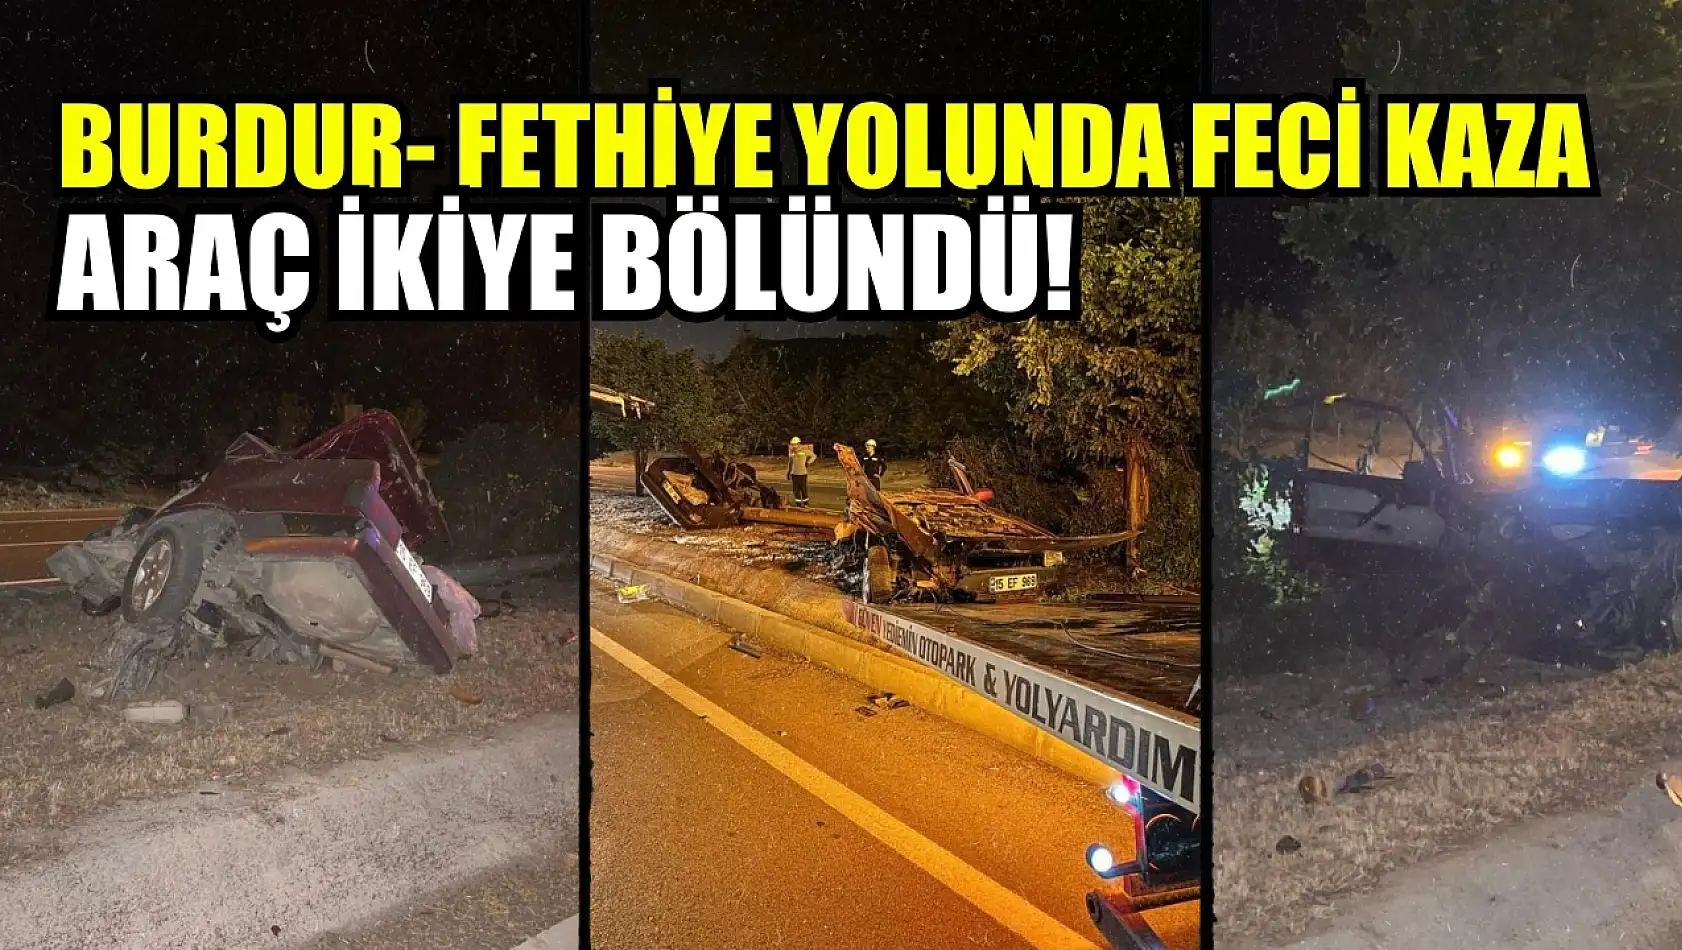 Burdur- Fethiye yolunda feci kaza: Araç ikiye bölündü!